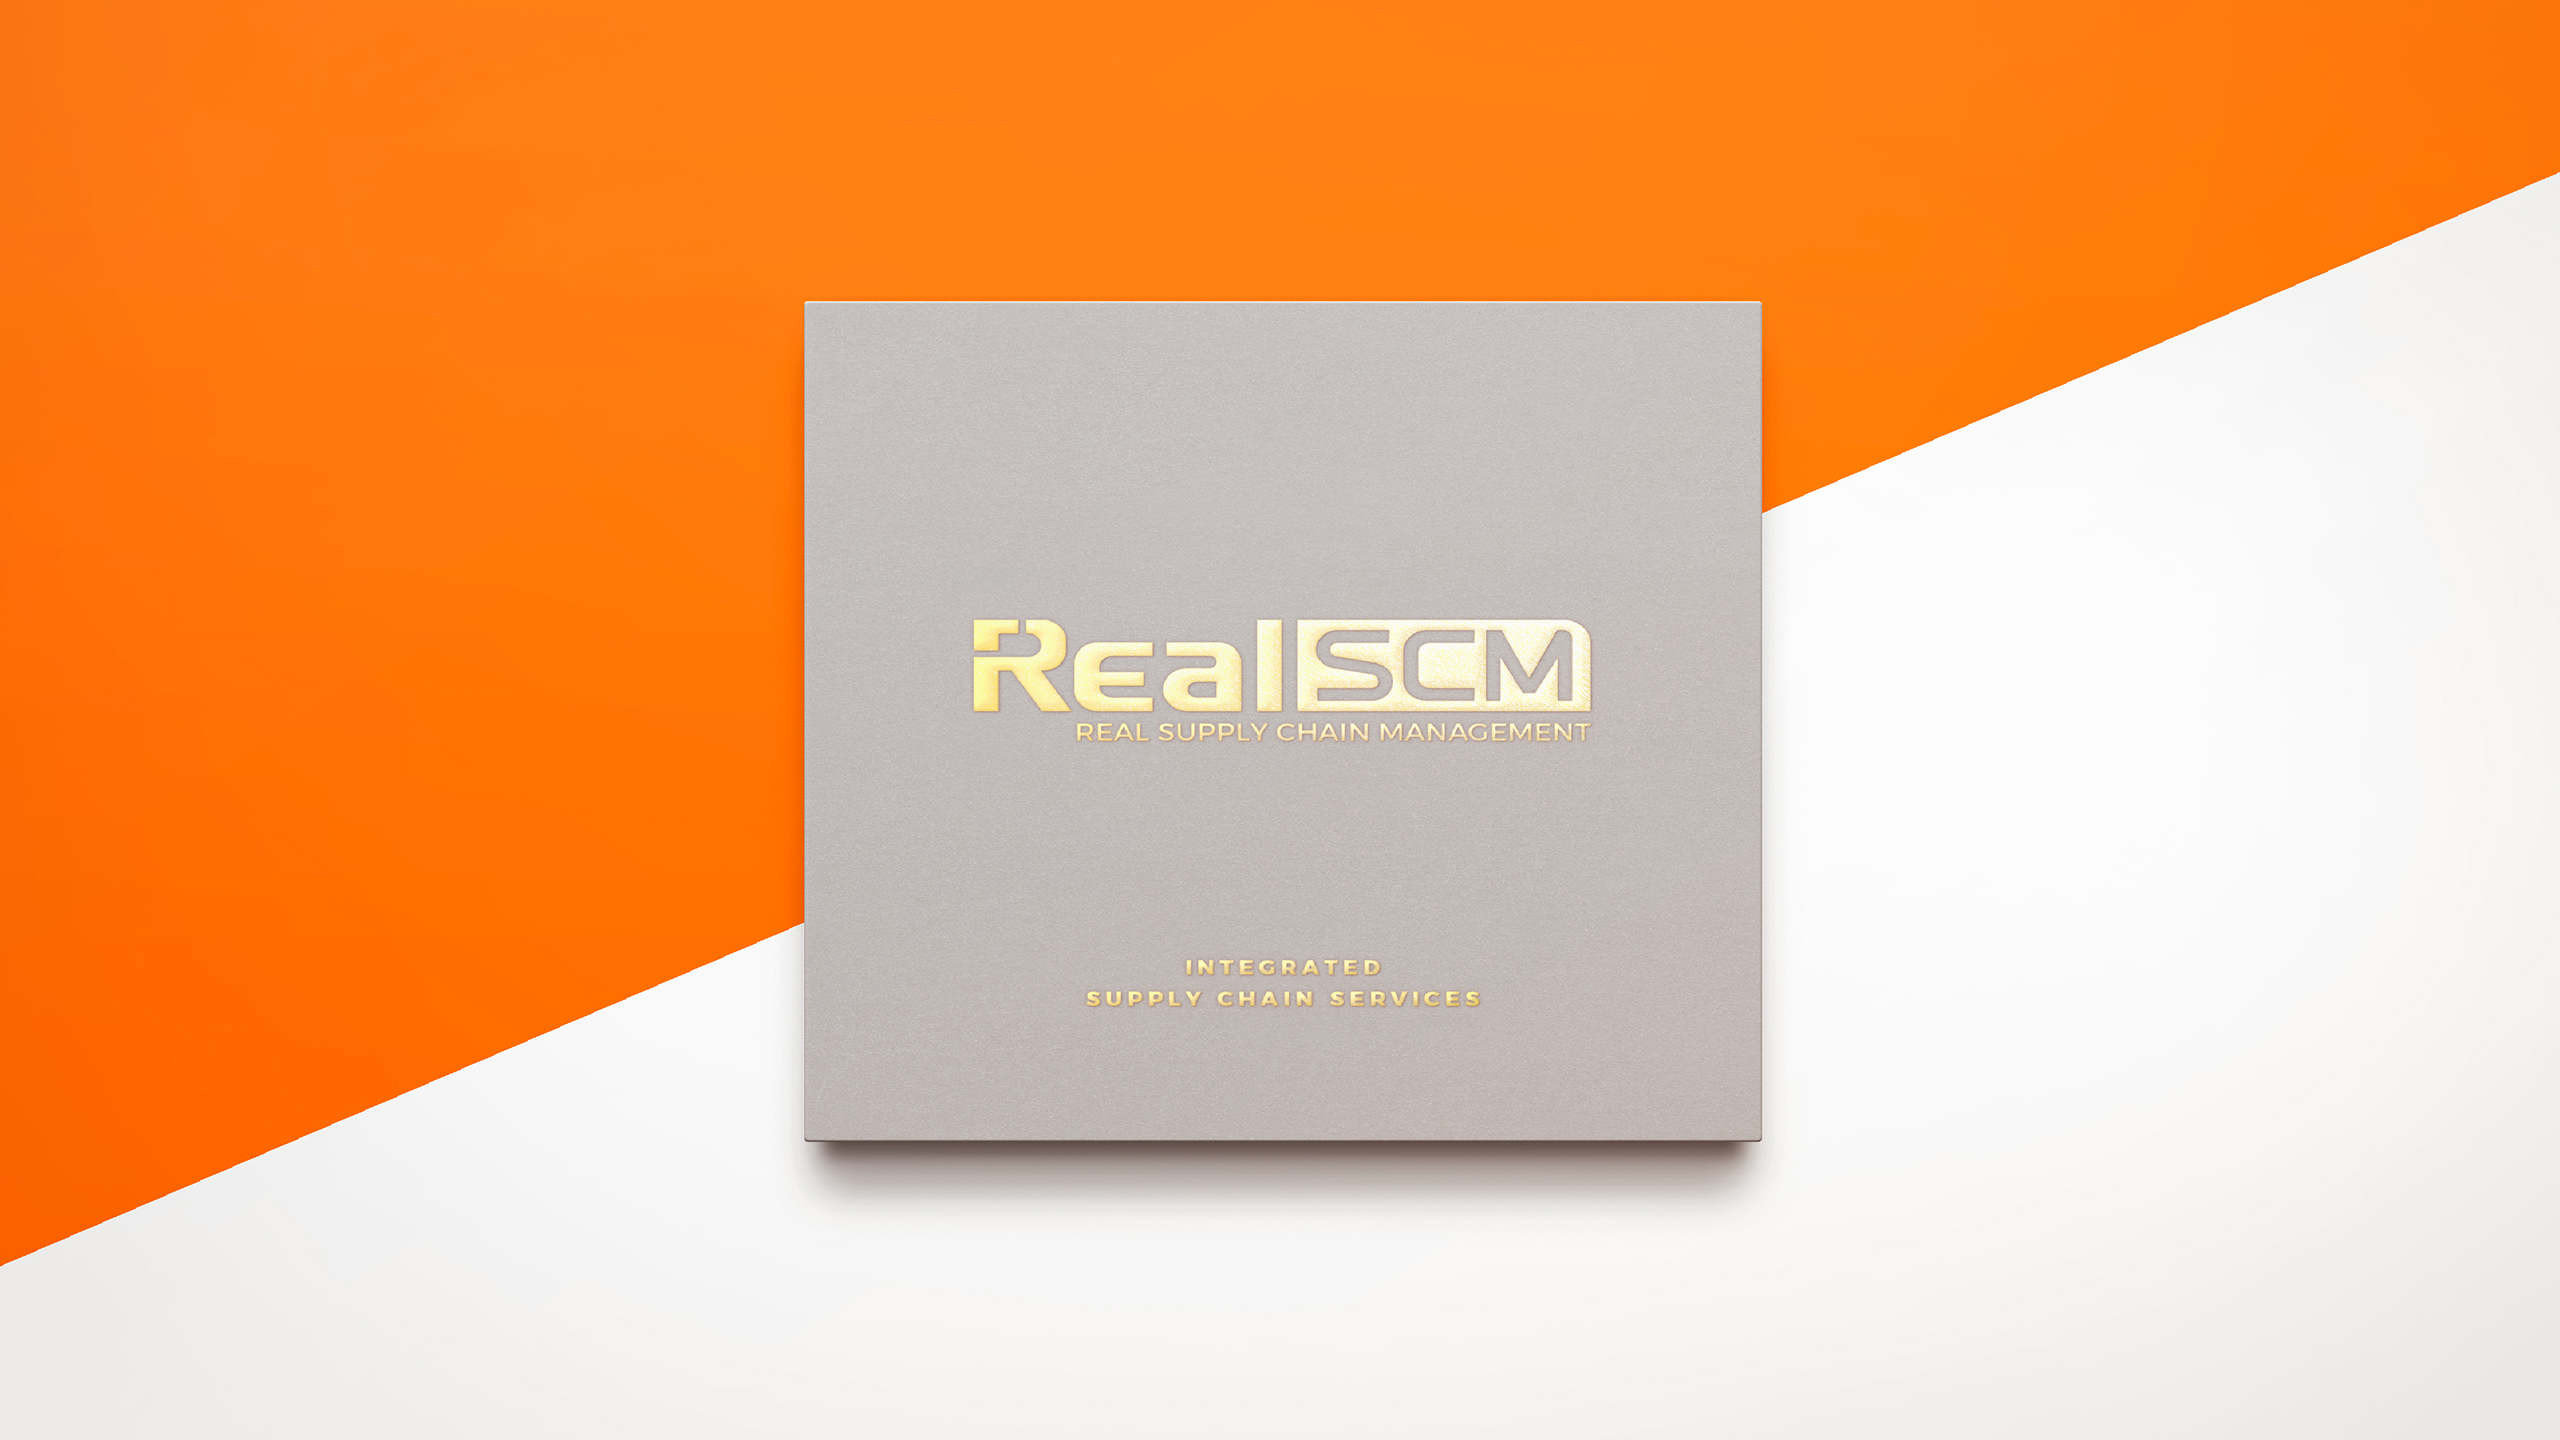 RealSCM案例整理站酷版-08.jpg